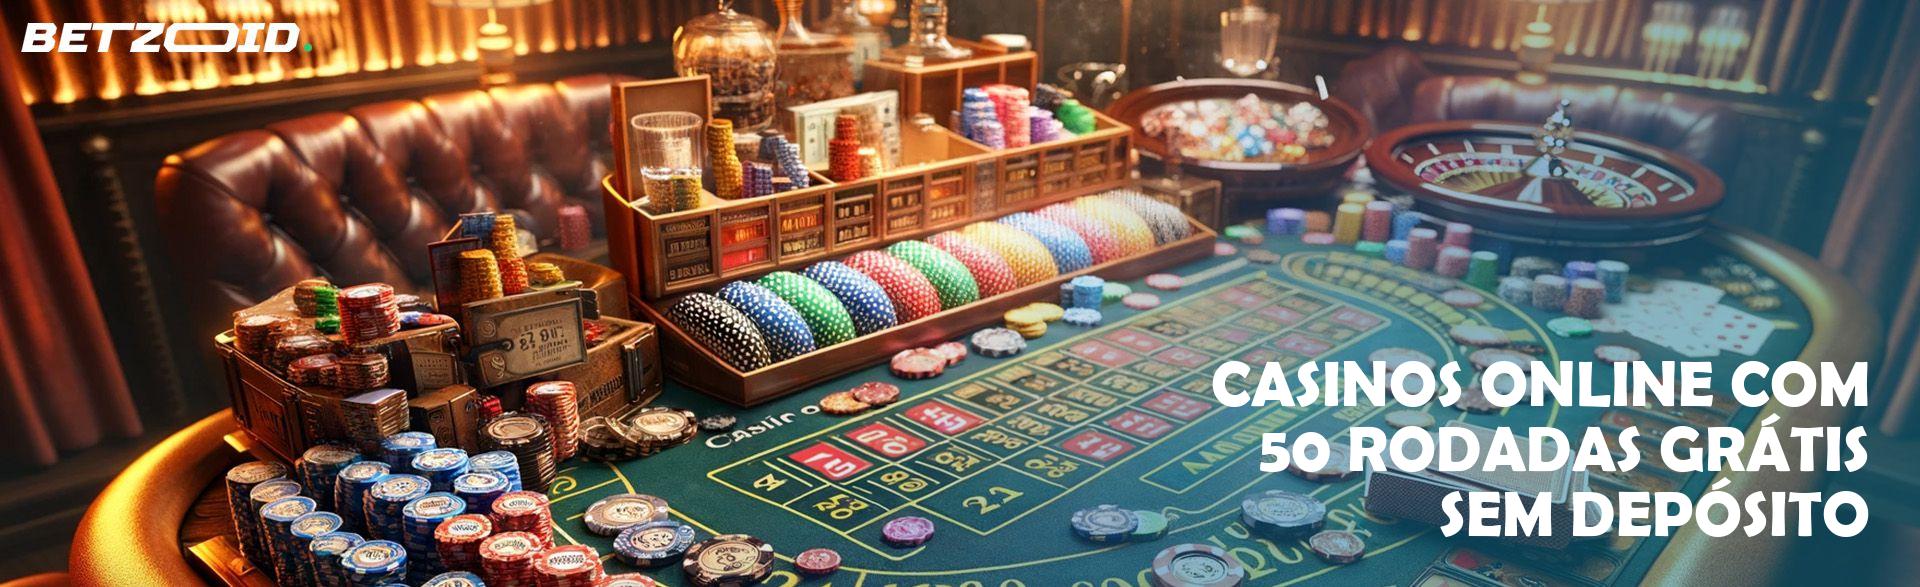 Casinos Online com 50 Rodadas Grátis sem Depósito.